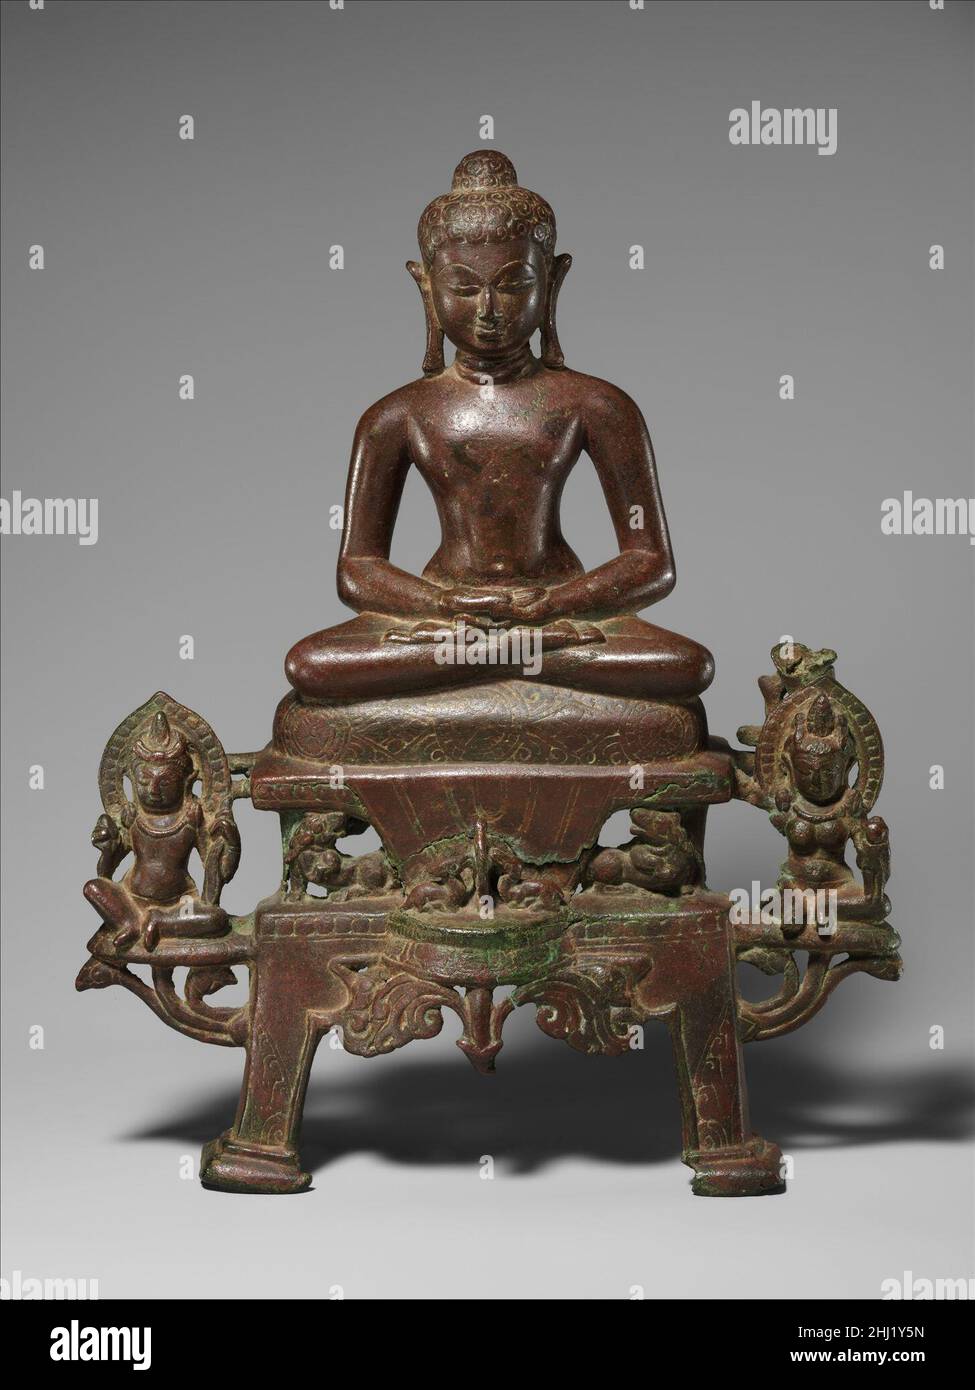 Enthroned Jina, probablement Neminatha fin du 7th siècle Inde (Gujarat, Akota) un savior Enthroned Jain est profondément dans la méditation, assis dans une posture yogique sur un coussin orné de bijoux sur un trône à deux niveaux soutenu par des lions.Au centre du piédestal, deux cerfs à genoux vénérèrent la roue de la loi (dharmachakra), symbole de la sagesse religieuse partagée avec le bouddhisme.Assis à l'aise royale sur la projection des supports de lotus sont les yaksha Gomedha et les yakshi Ambika, les serviteurs de la jina Neminatha, la vingt-deuxième dans la lignée de vingt-quatre jinas historiques reconnues par la religion de Jain.En marche arrière, la tension est de Banque D'Images